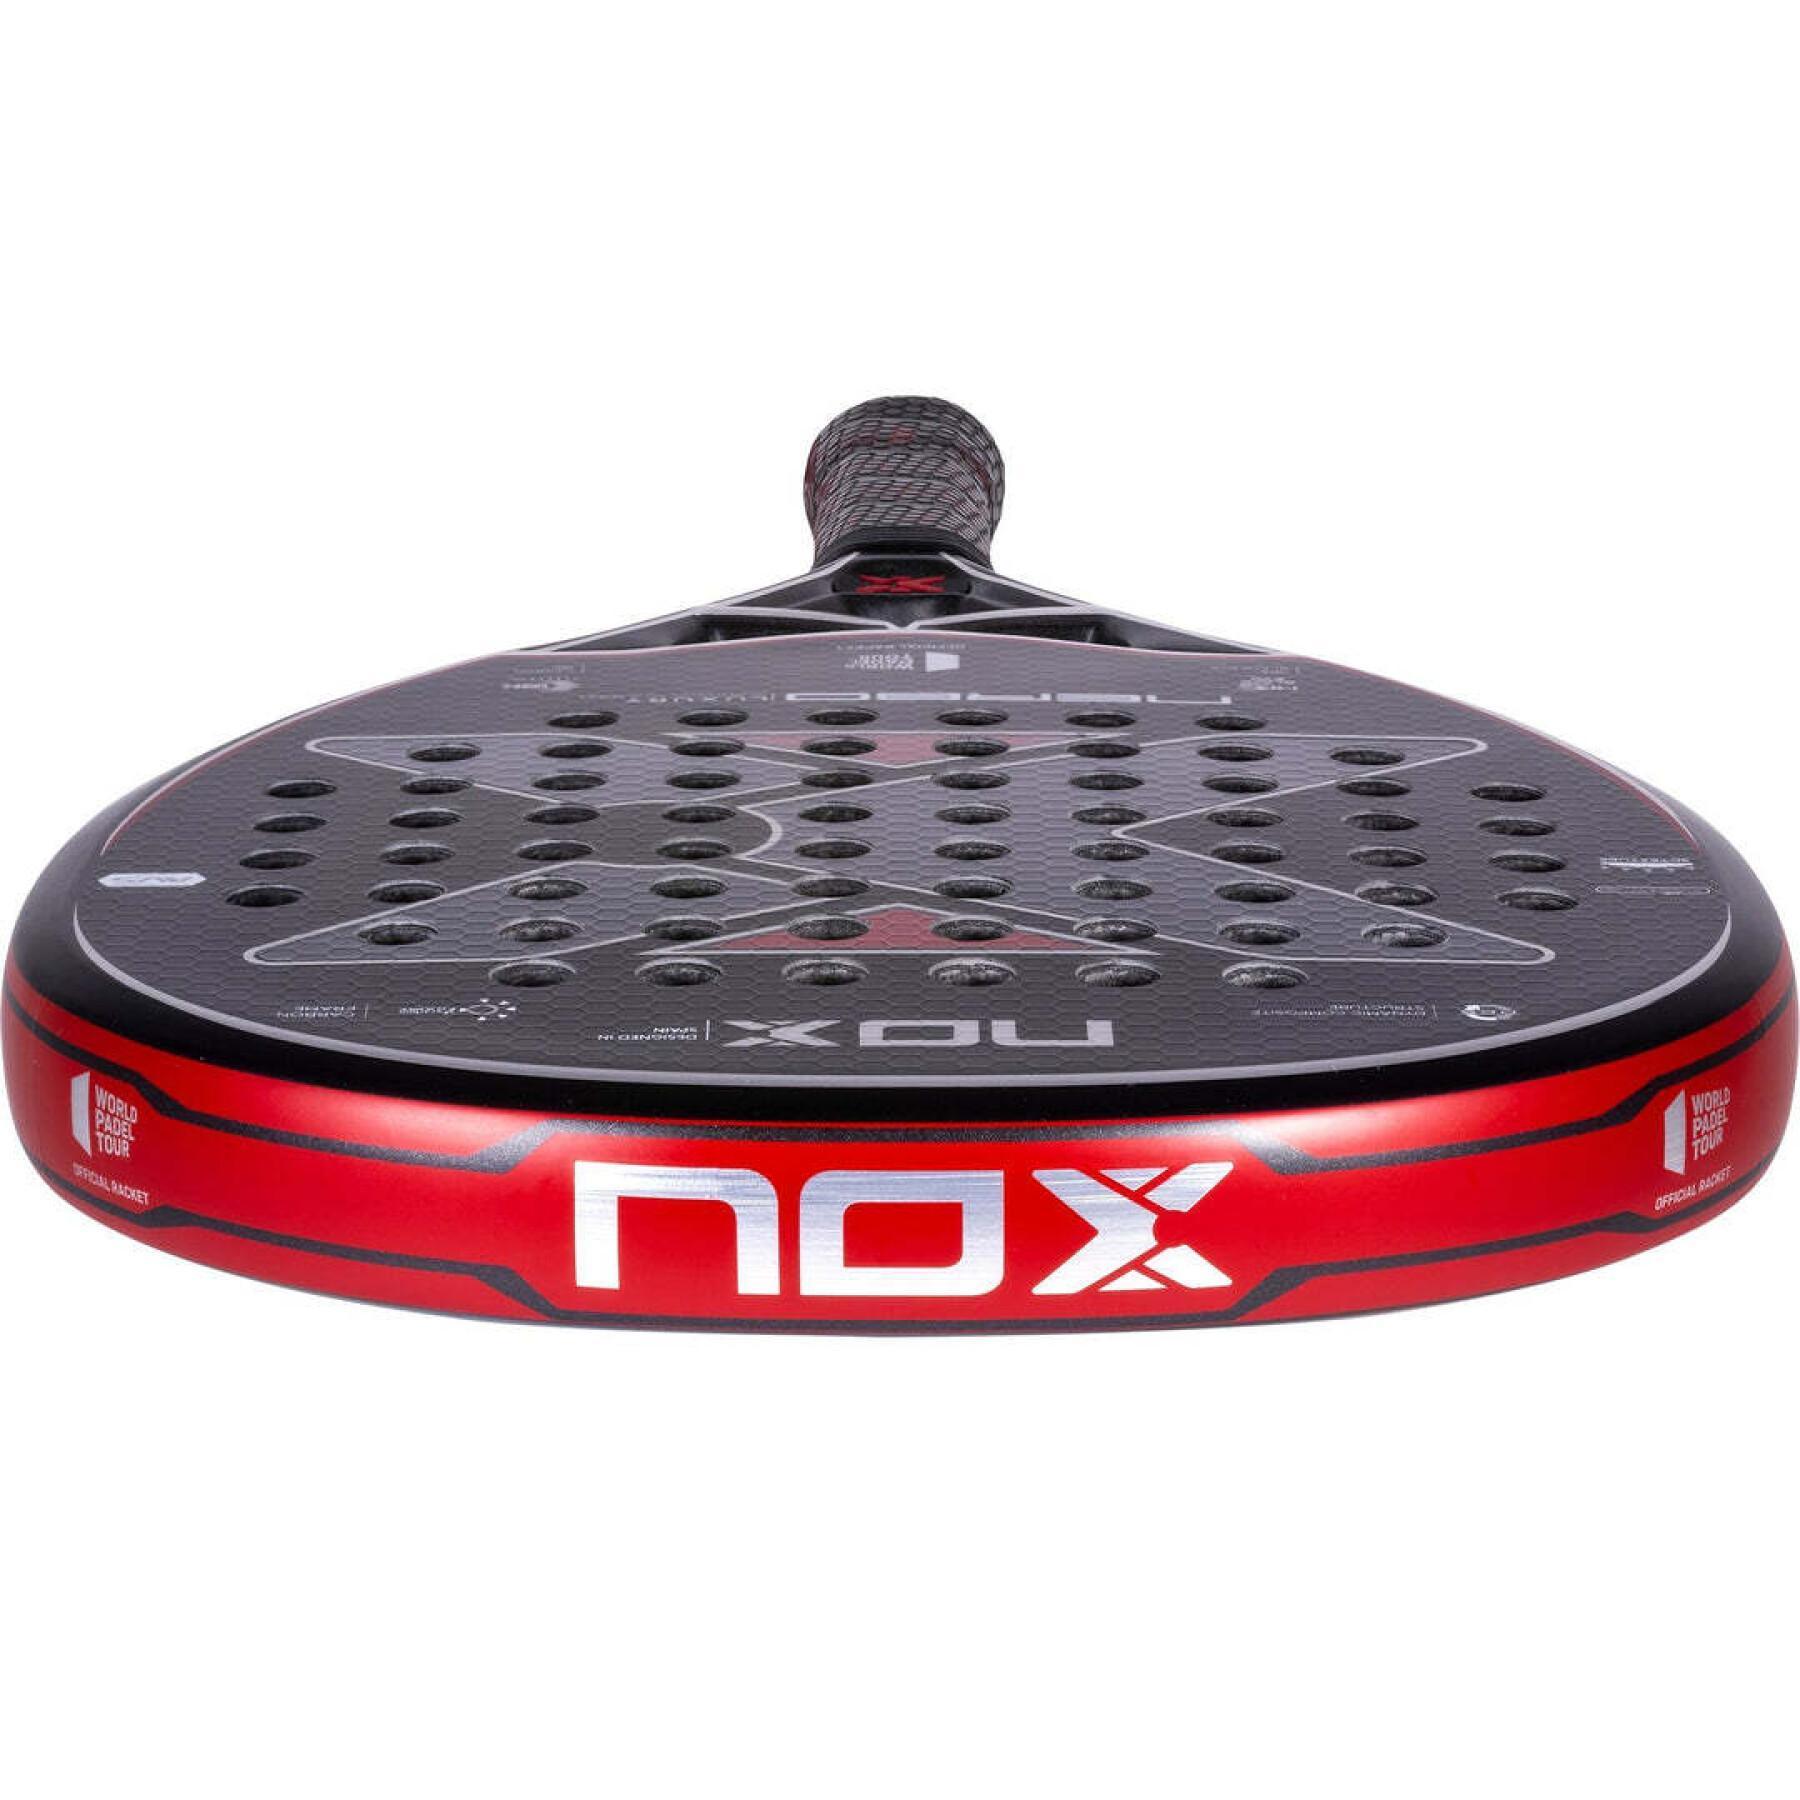 Paddelracket Nox Nerbo WPT Luxury Series